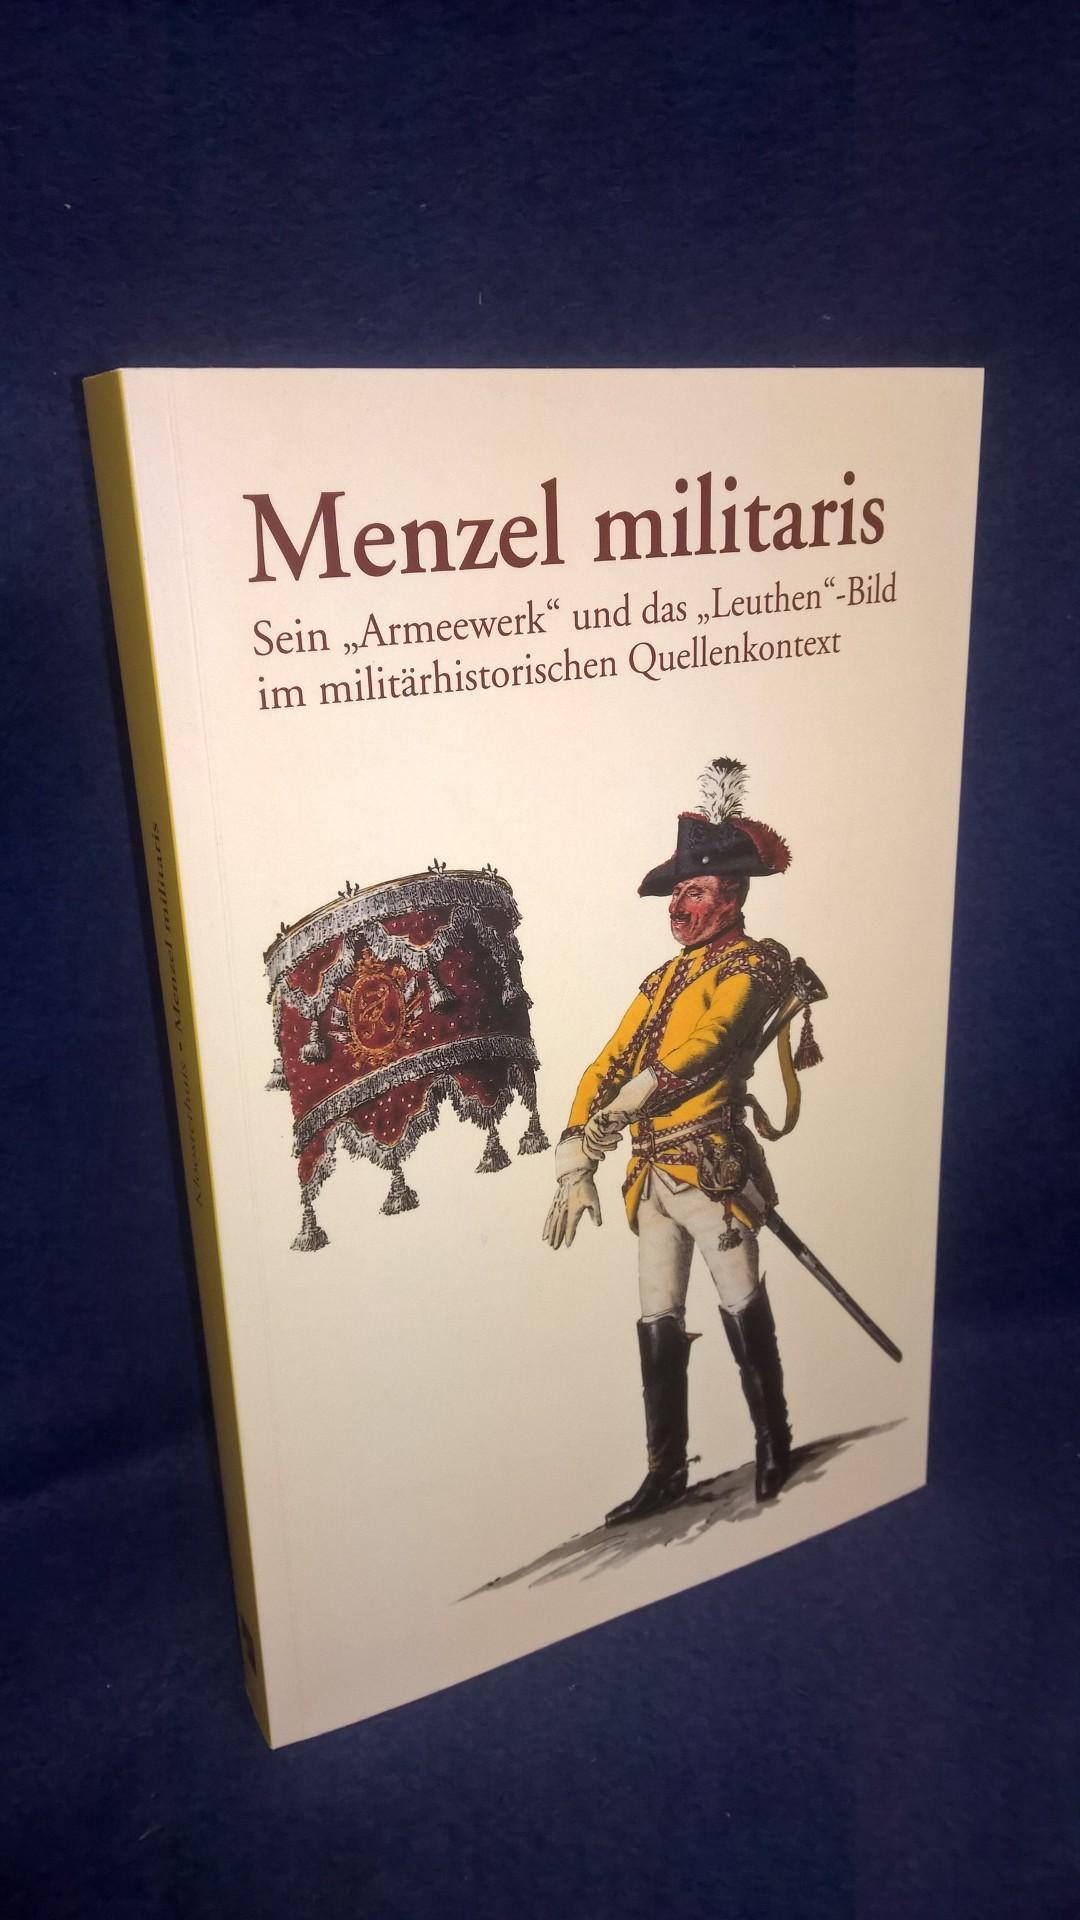 Menzel militaris: Sein "Armeewerk" und das "Leuthen"-Bild im militärhistorischen Quellenkontext.